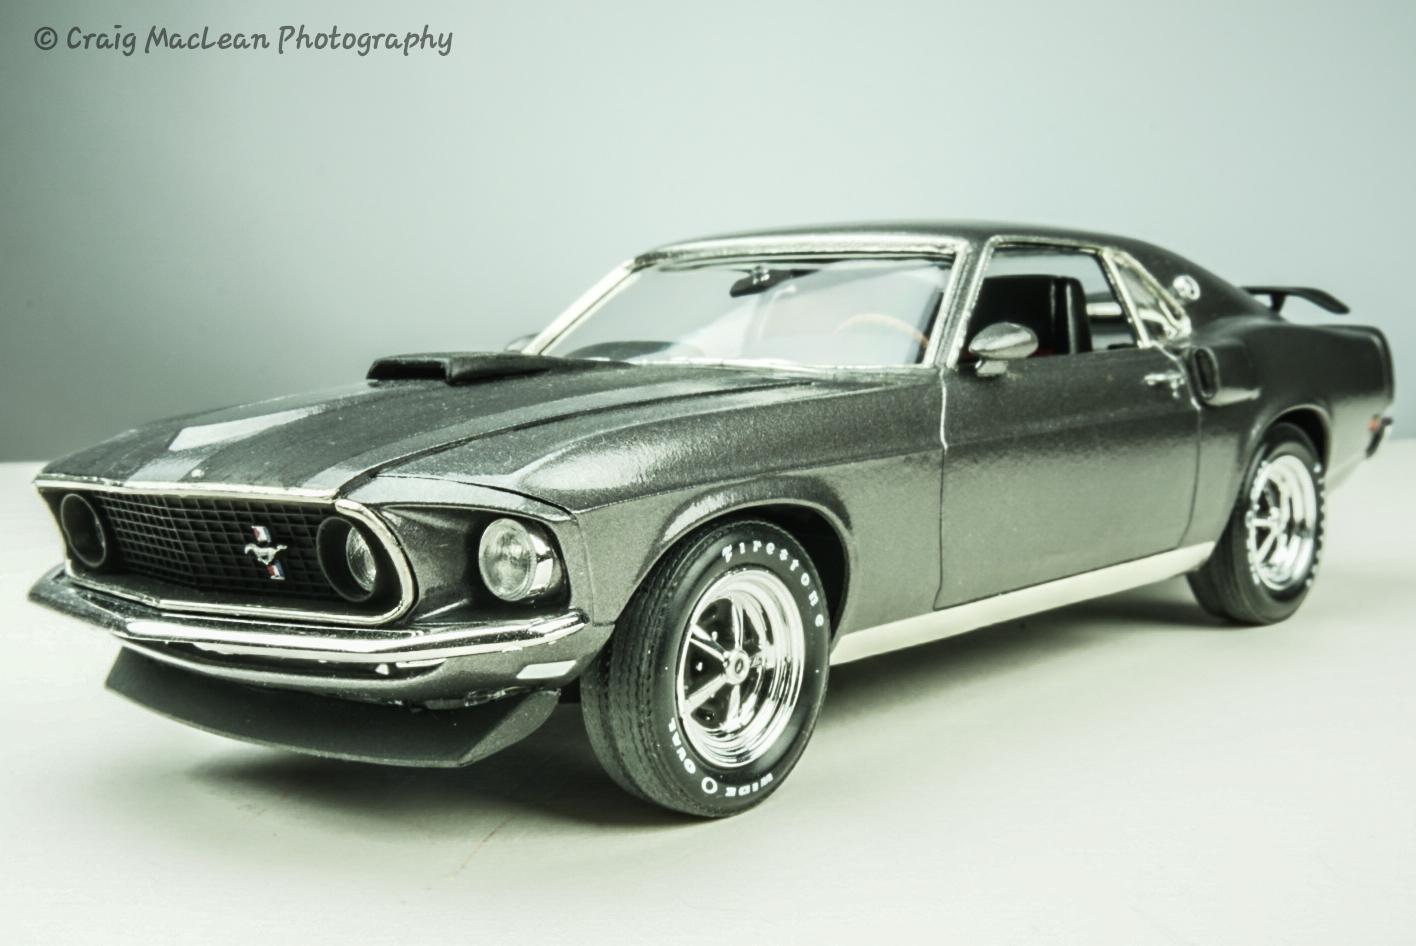 Revell 69 Mustang Boss 302 - Model Cars - Model Cars Magazine Forum